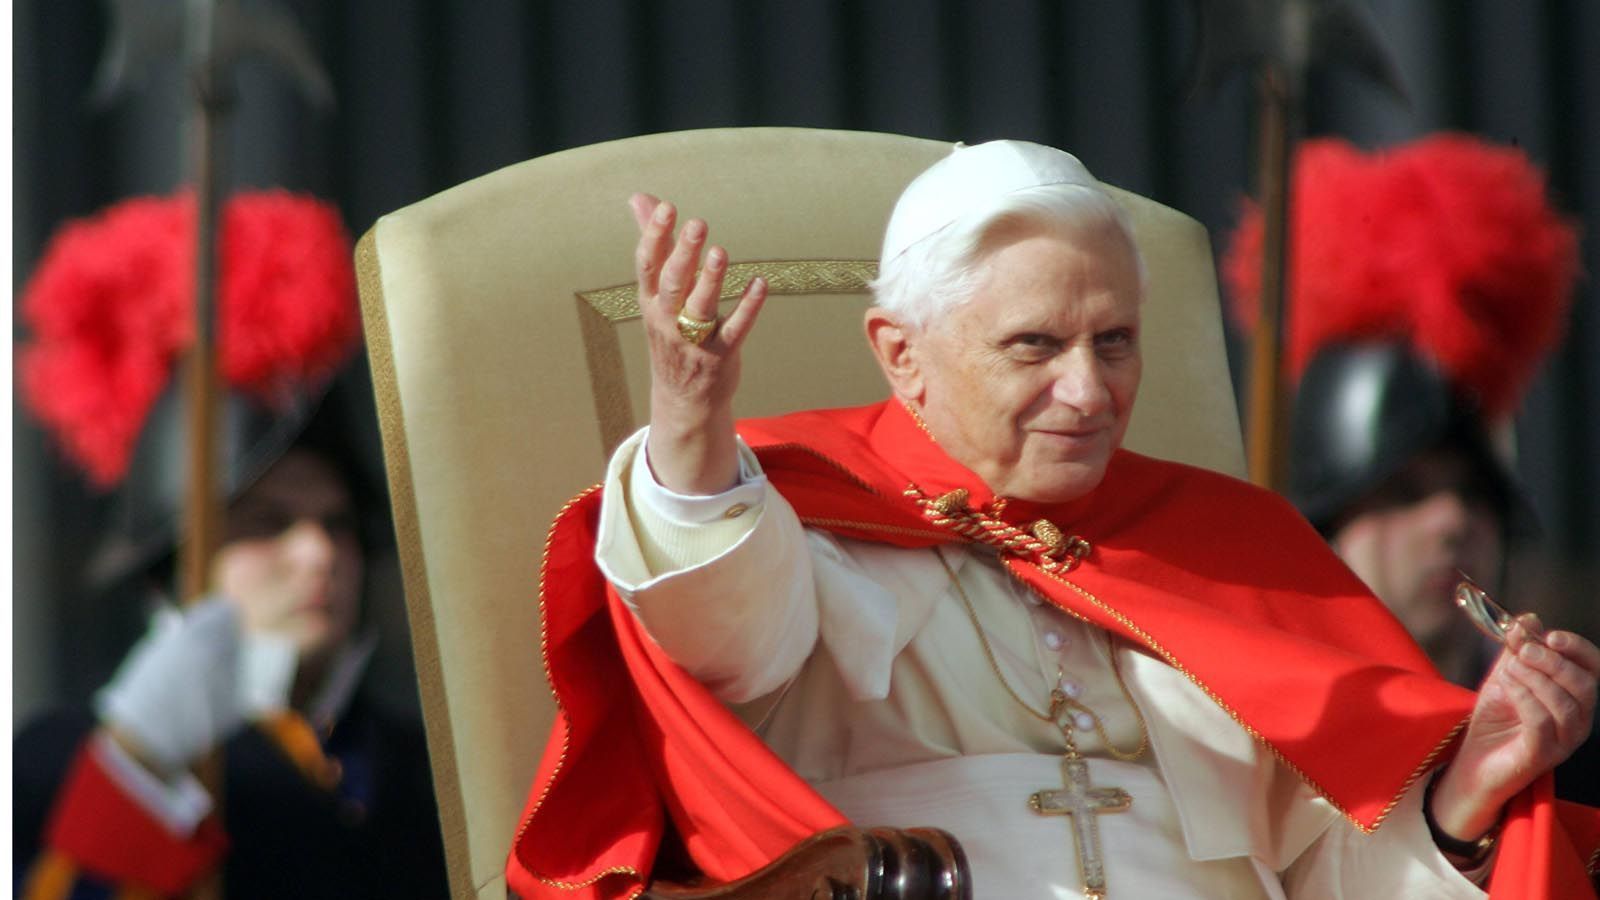 
                <strong>Wir sind Papst </strong><br>
                Nach dem Tod von Johannes Paul II. wird der deutsche Kardinal Josef Ratzinger im Konklave zum neuen Papst gewählt. Er trägt fortan den Namen Benedikt XVI.
              